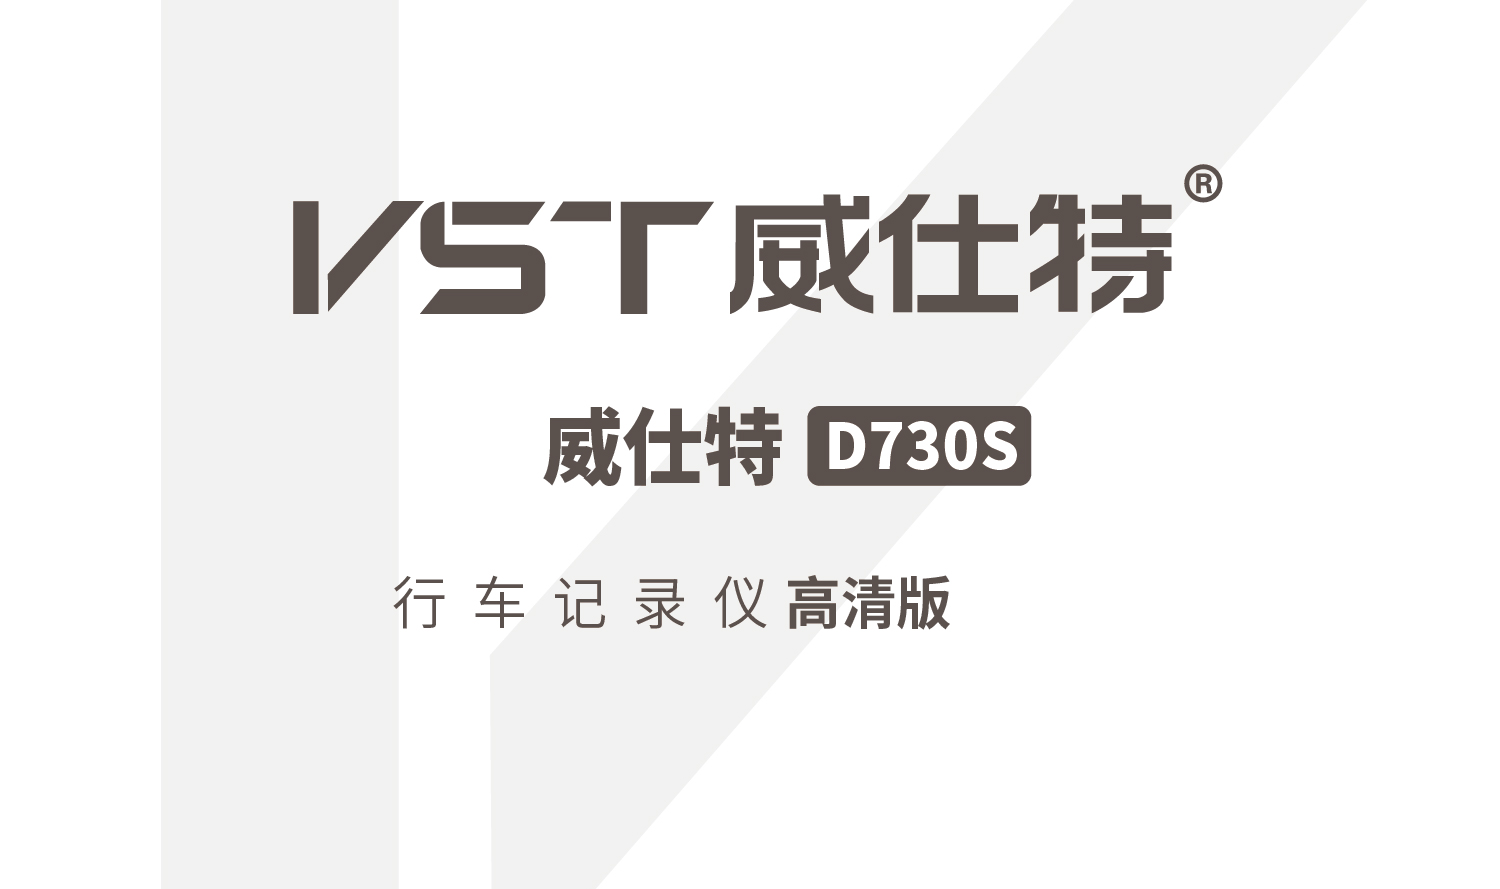 威仕特 VST D730S高清版 使用说明书 封面